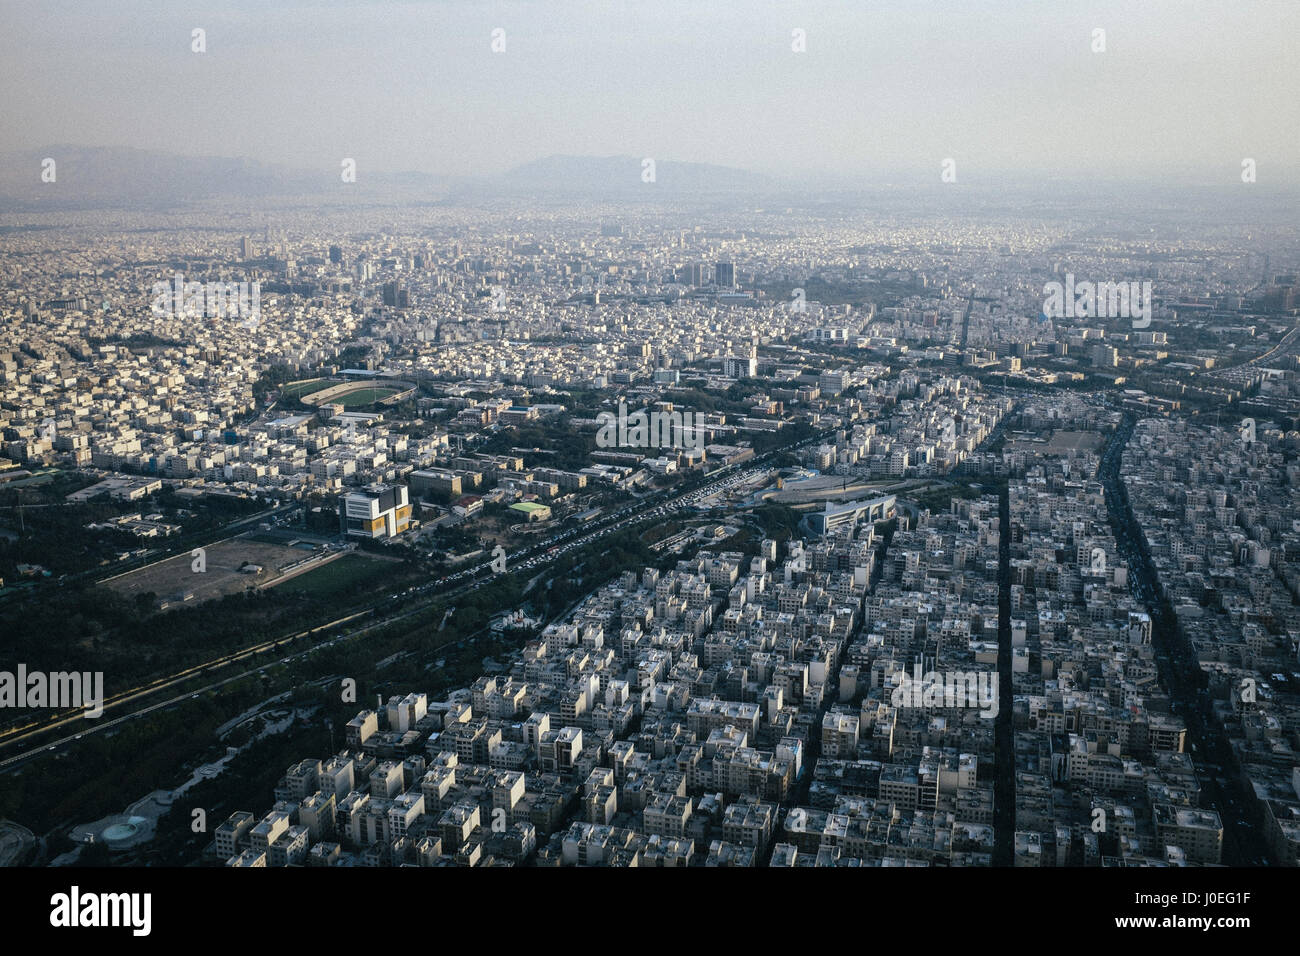 Blick auf die Stadt Teheran, der Hauptstadt des Iran. Teheran ist die größte Stadt im Iran mit einer Bevölkerung von rund 8,5 Millionen. Stockfoto